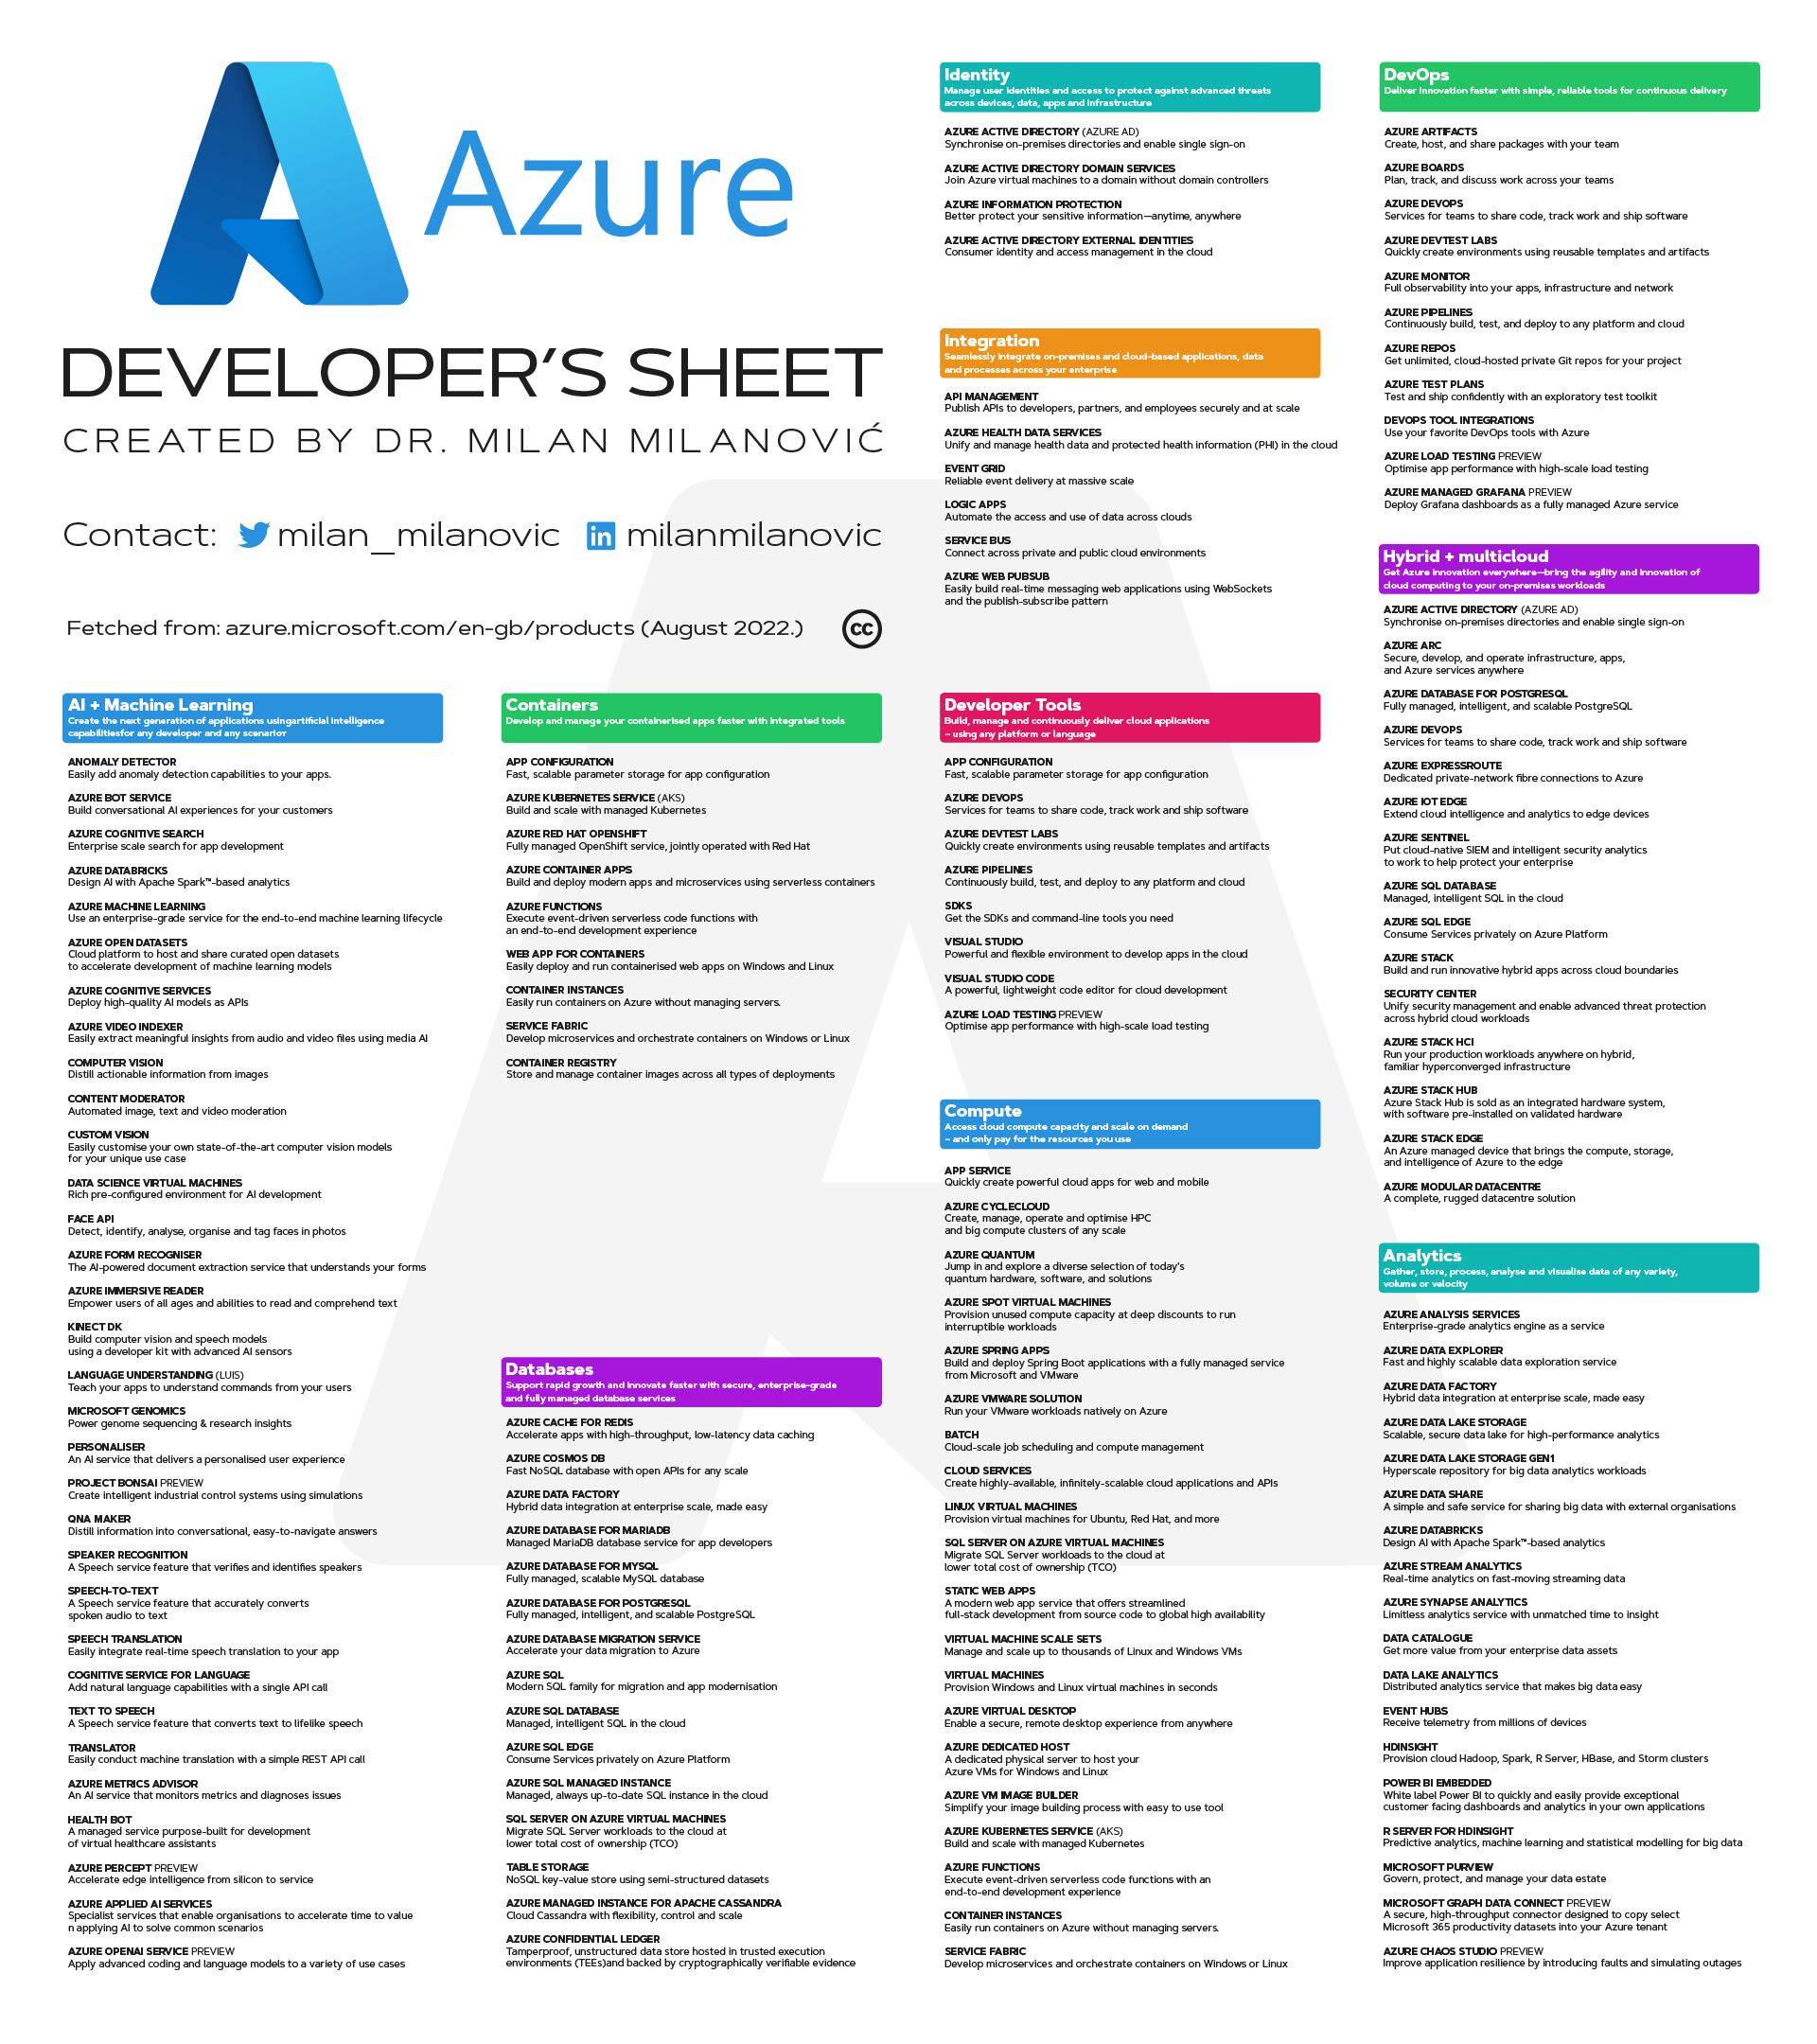 Azure-document-light-1st-page-low-rez.png